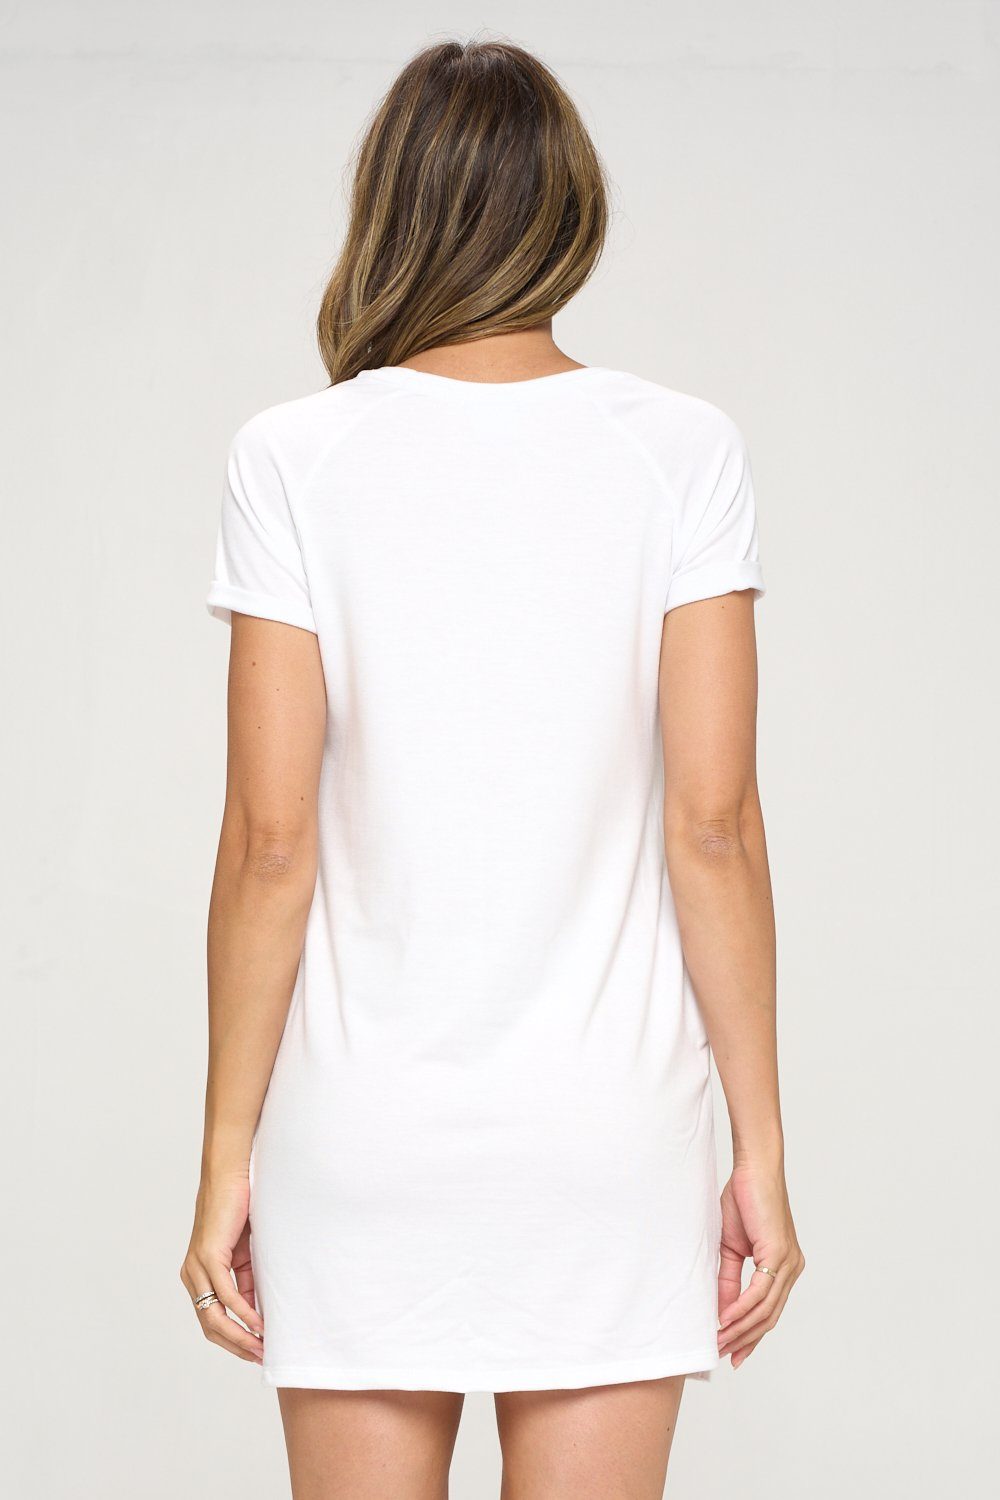 Desi - White T-Shirt Dress***Final Sale***